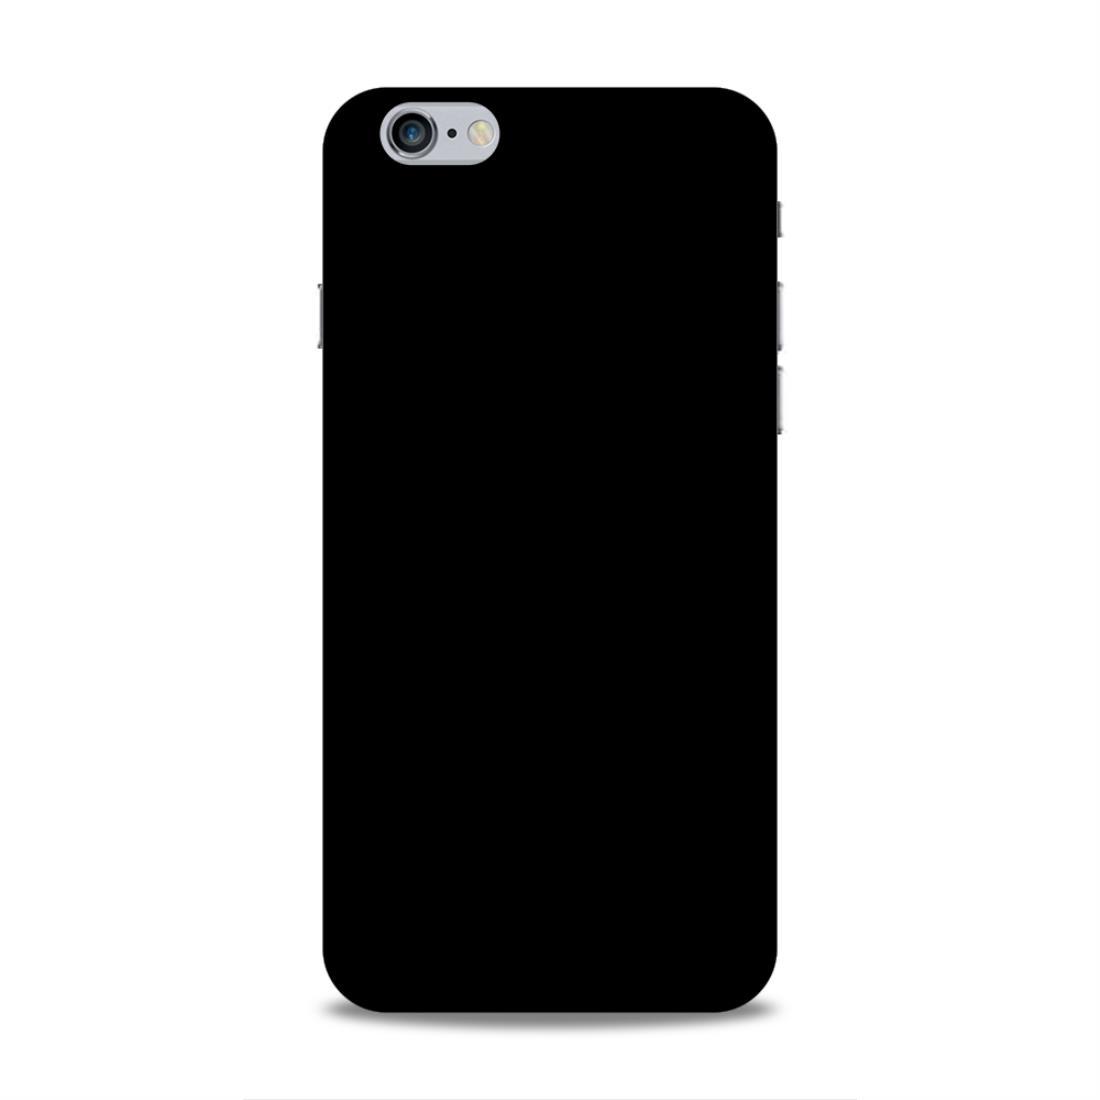 Black Classic Plain iPhone 6 Plus Phone Cover Case Case